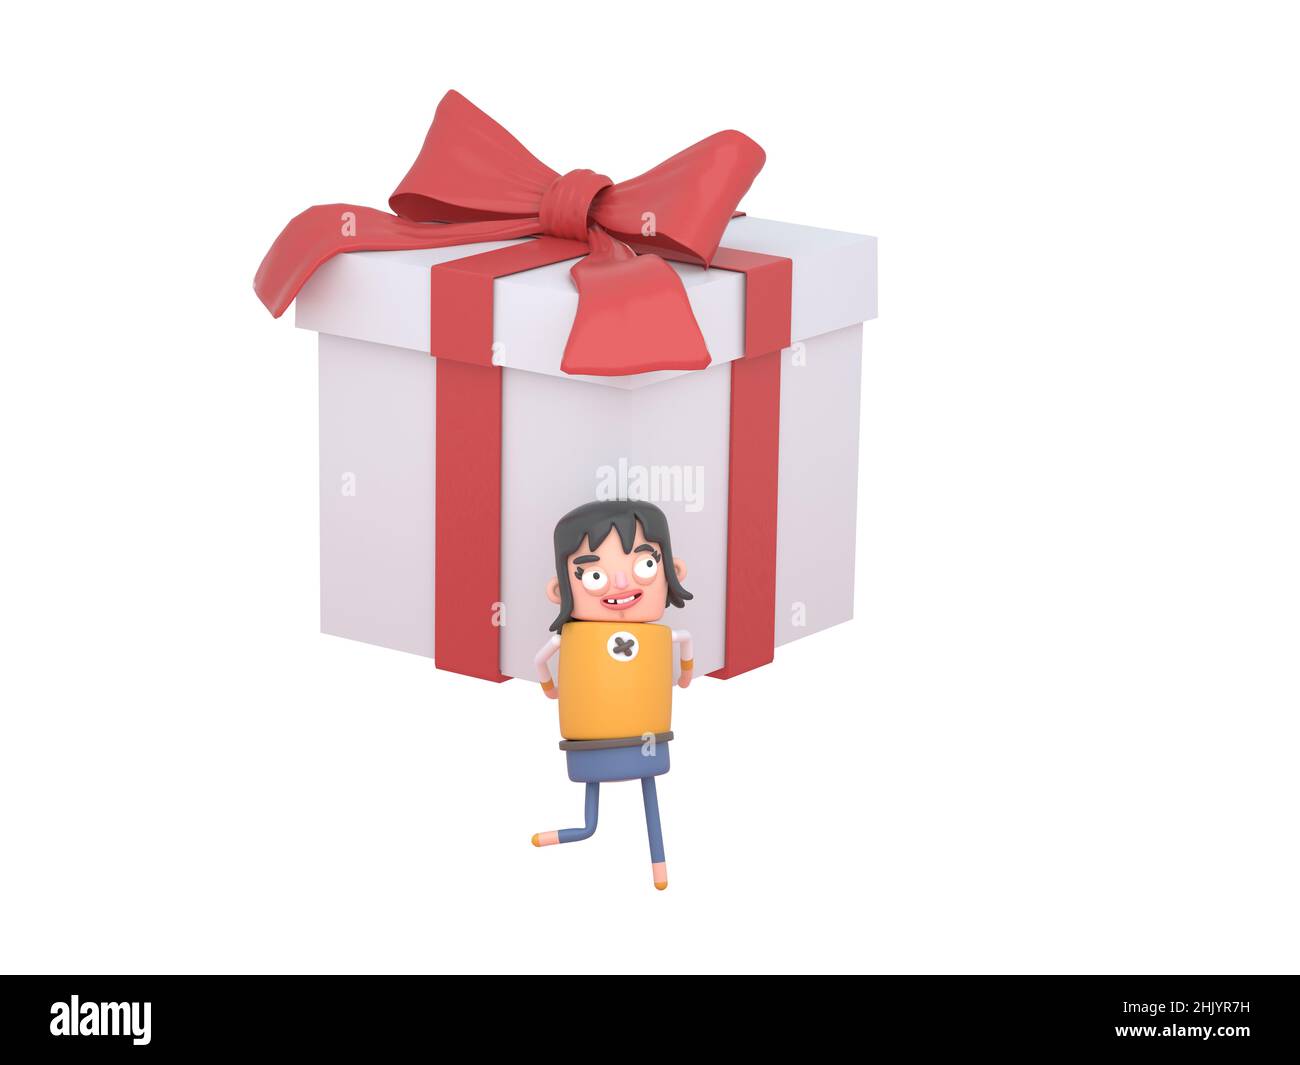 Ilustración de la niña linda abriendo paquetes de regalo ilustración  vectorial